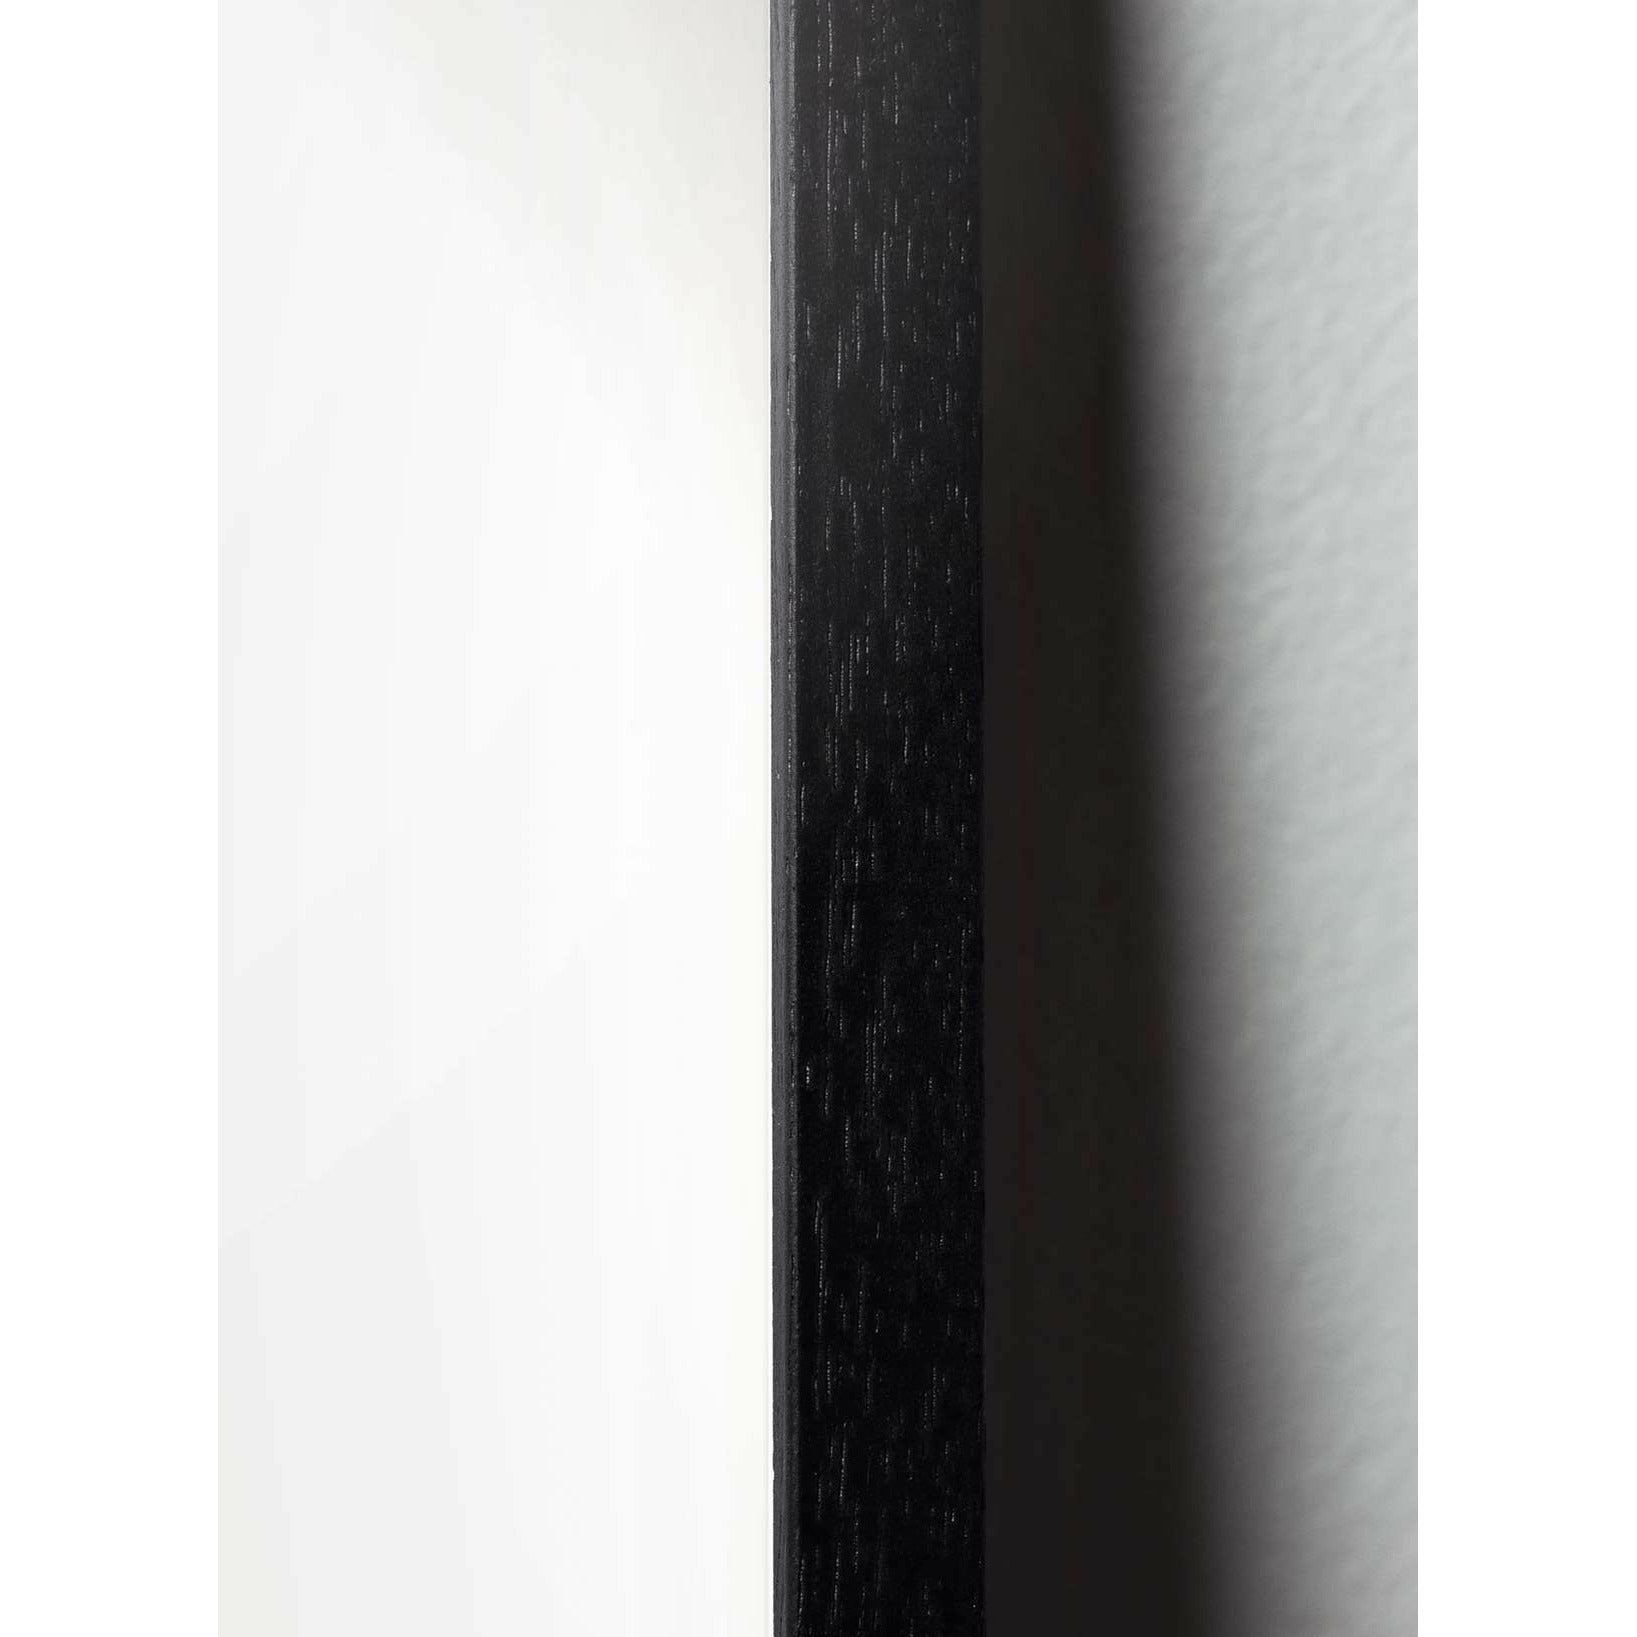 Klasický plakát s mozkem, rám vyrobený z černého lakovaného dřeva 30x40 cm, černé pozadí